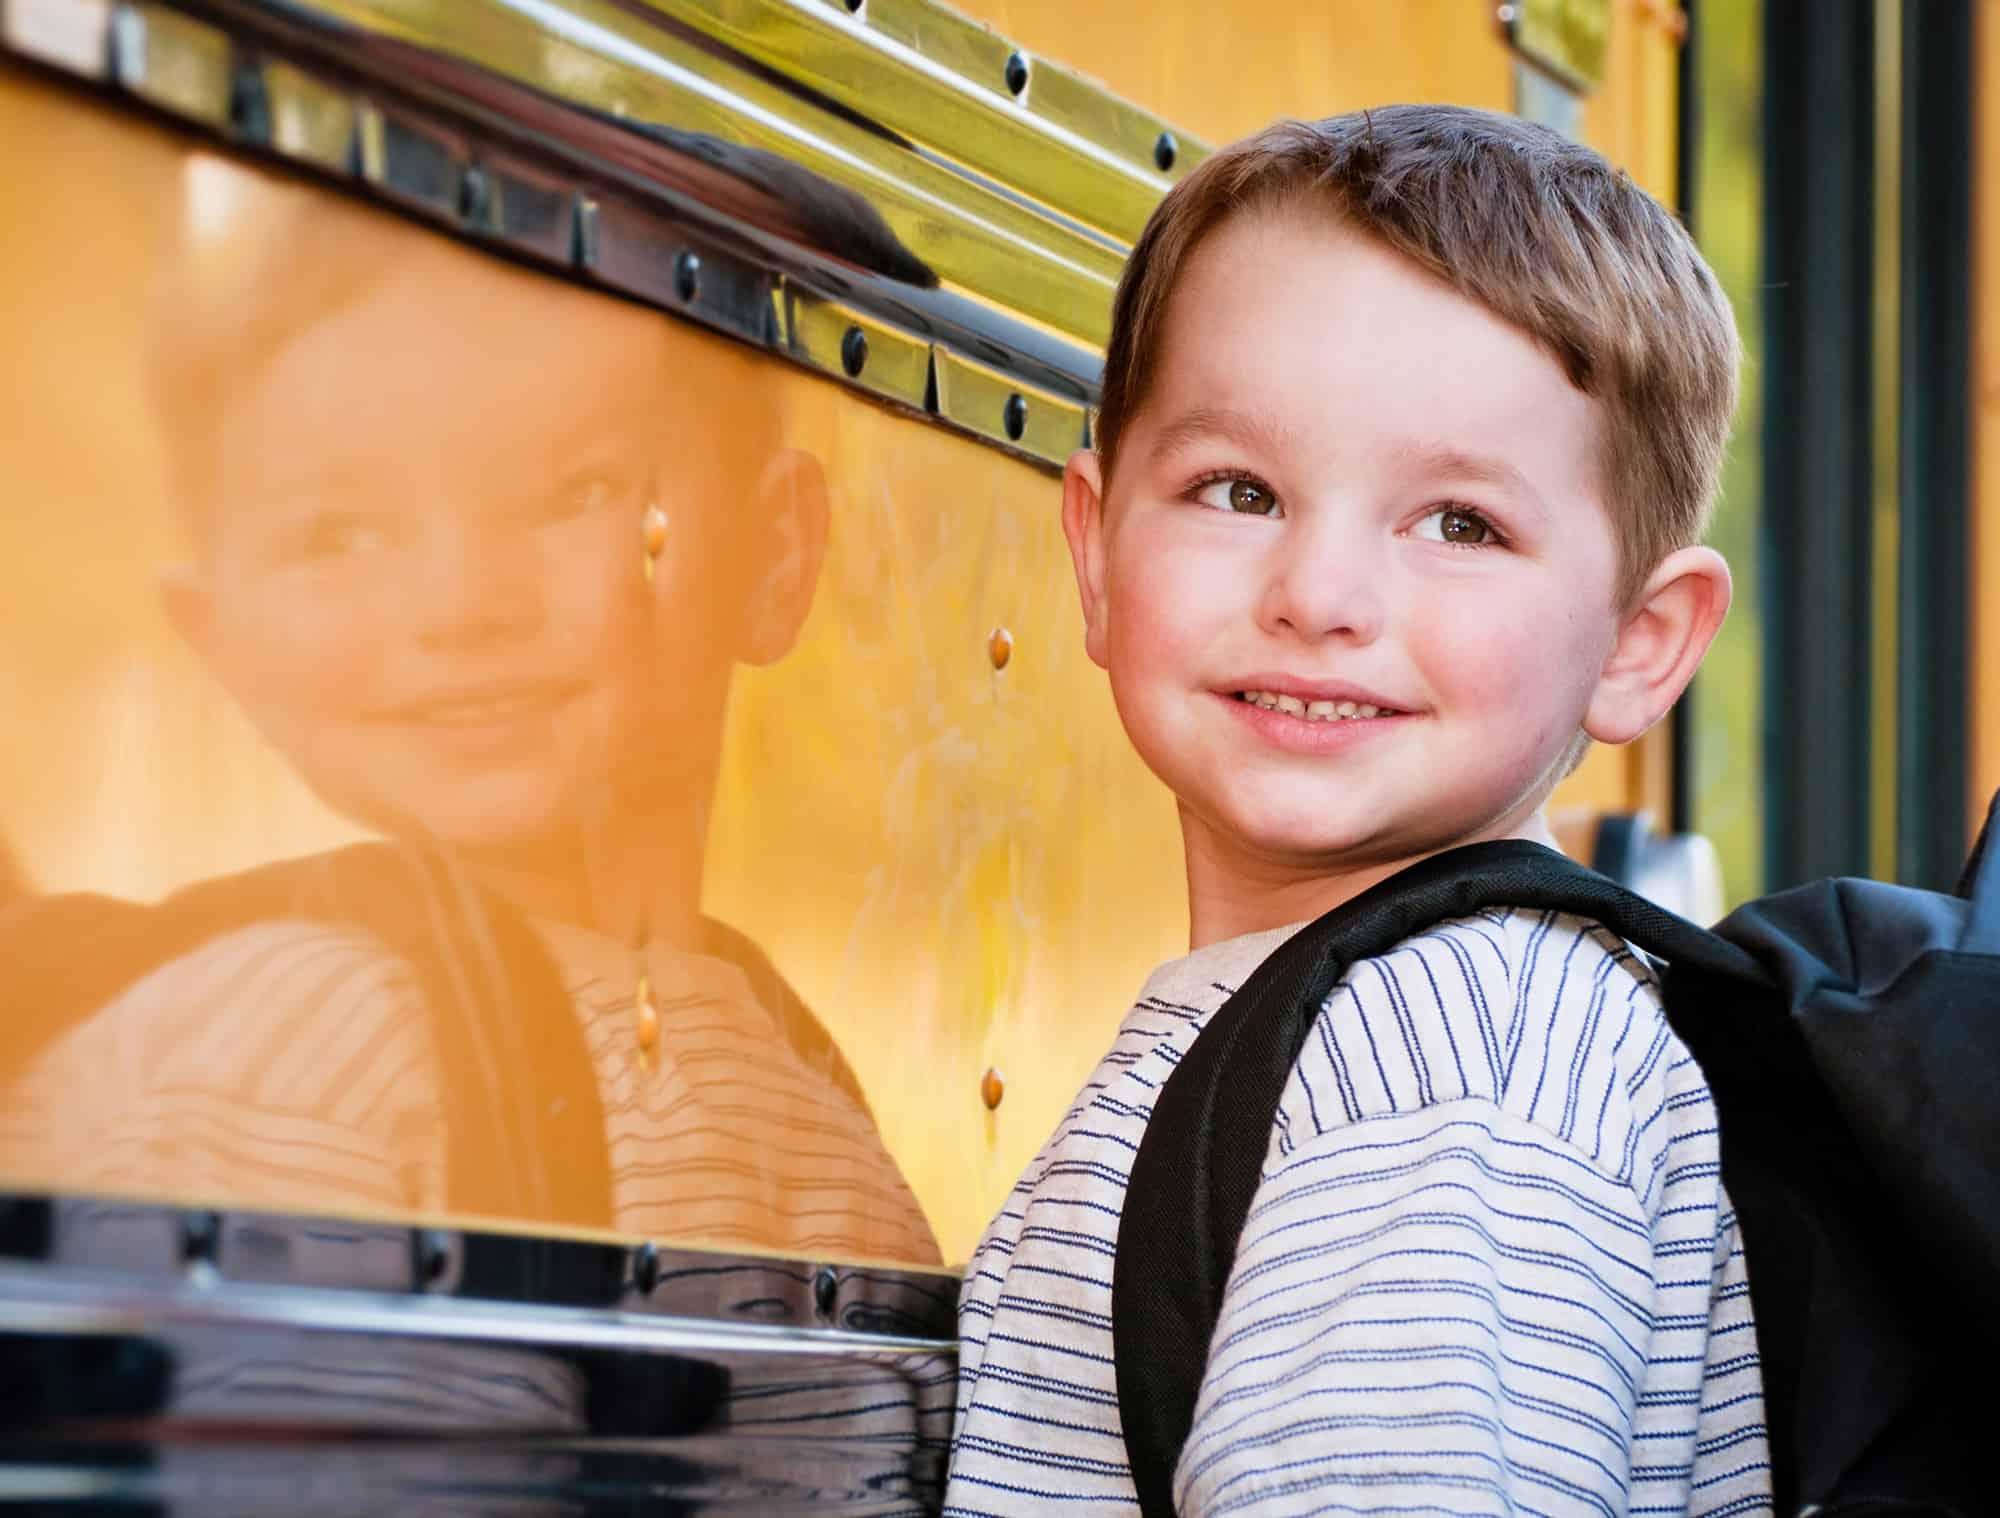 Ônibus escolar e crianças: Medidas de segurança